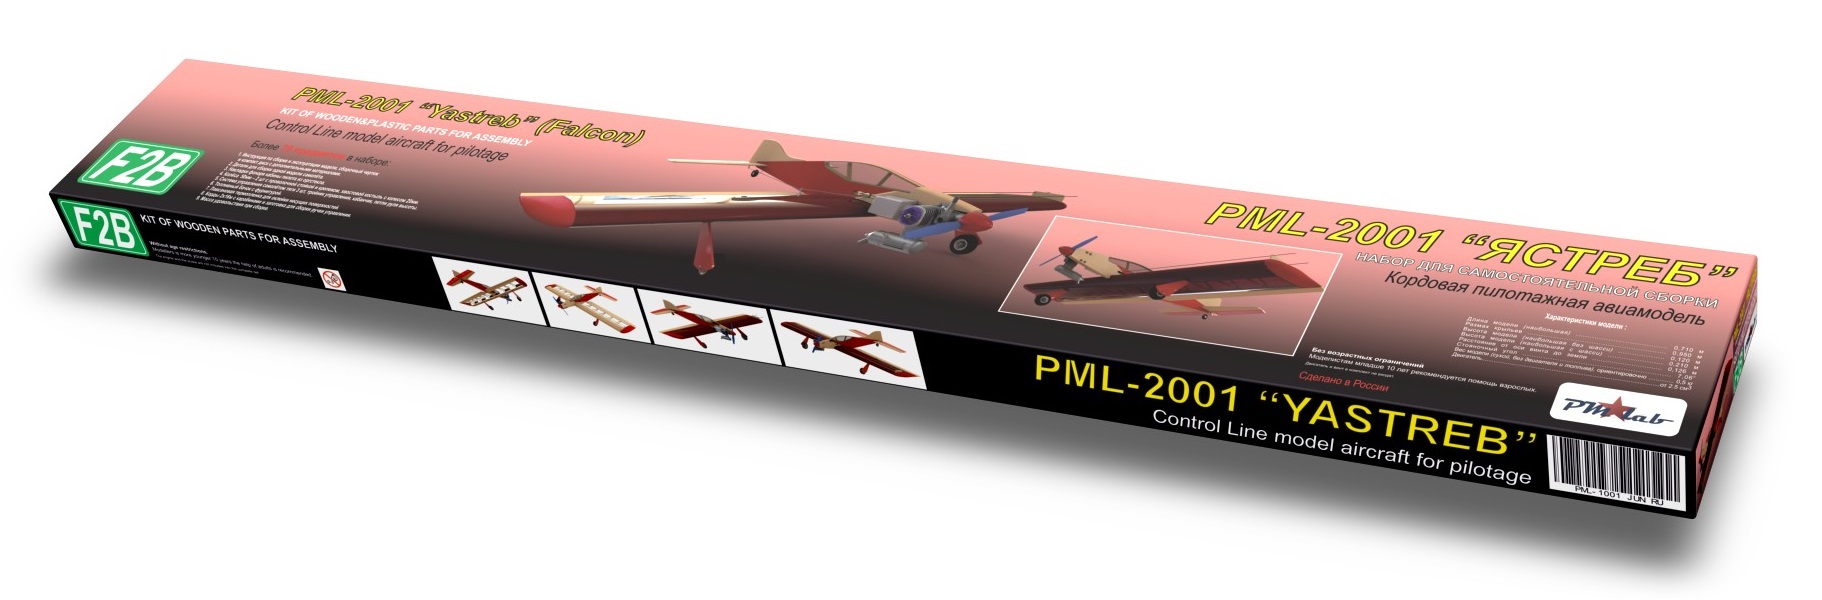 Кордовая пилотажная модель PML-2001 Ястреб